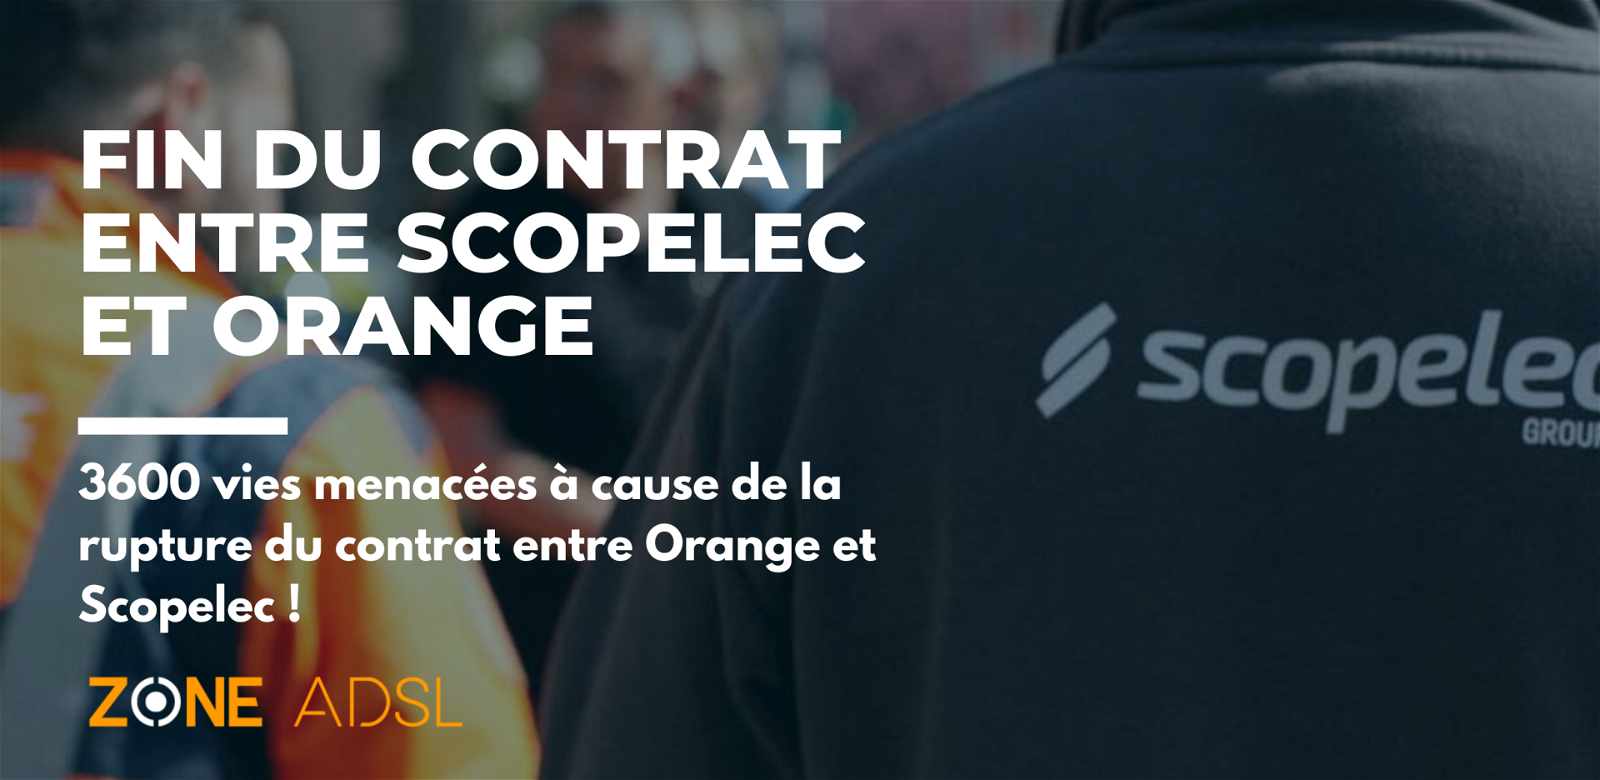 Fin du contrat entre Scopelec et Orange @ZoneADSL